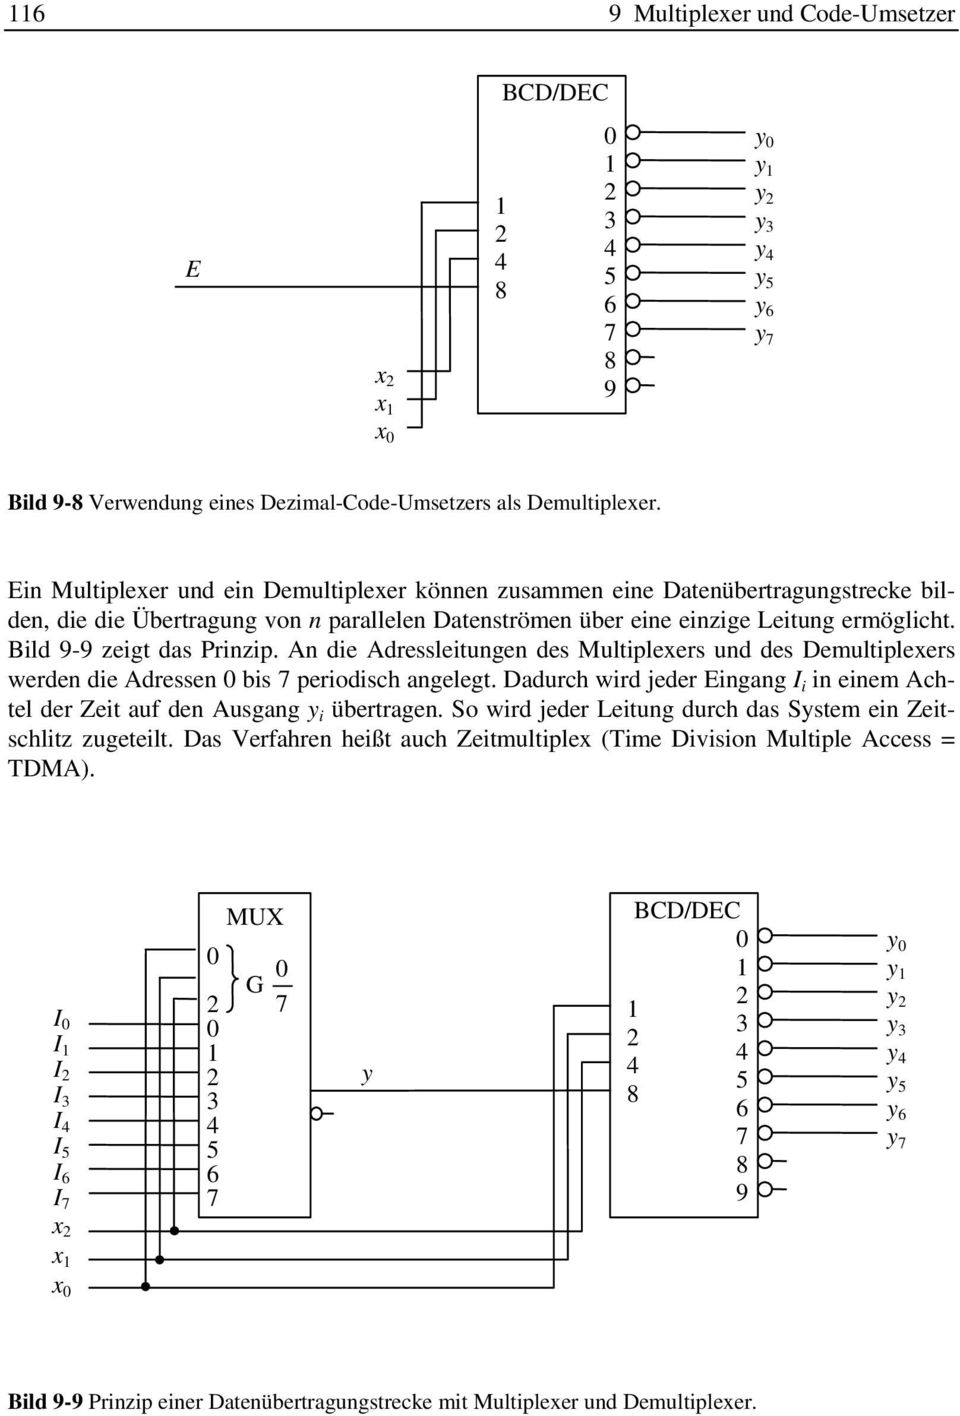 Bild 9-9 zeigt das Prinzip. An die Adressleitungen des Multiplexers und des Demultiplexers werden die Adressen bis 7 periodisch angelegt.